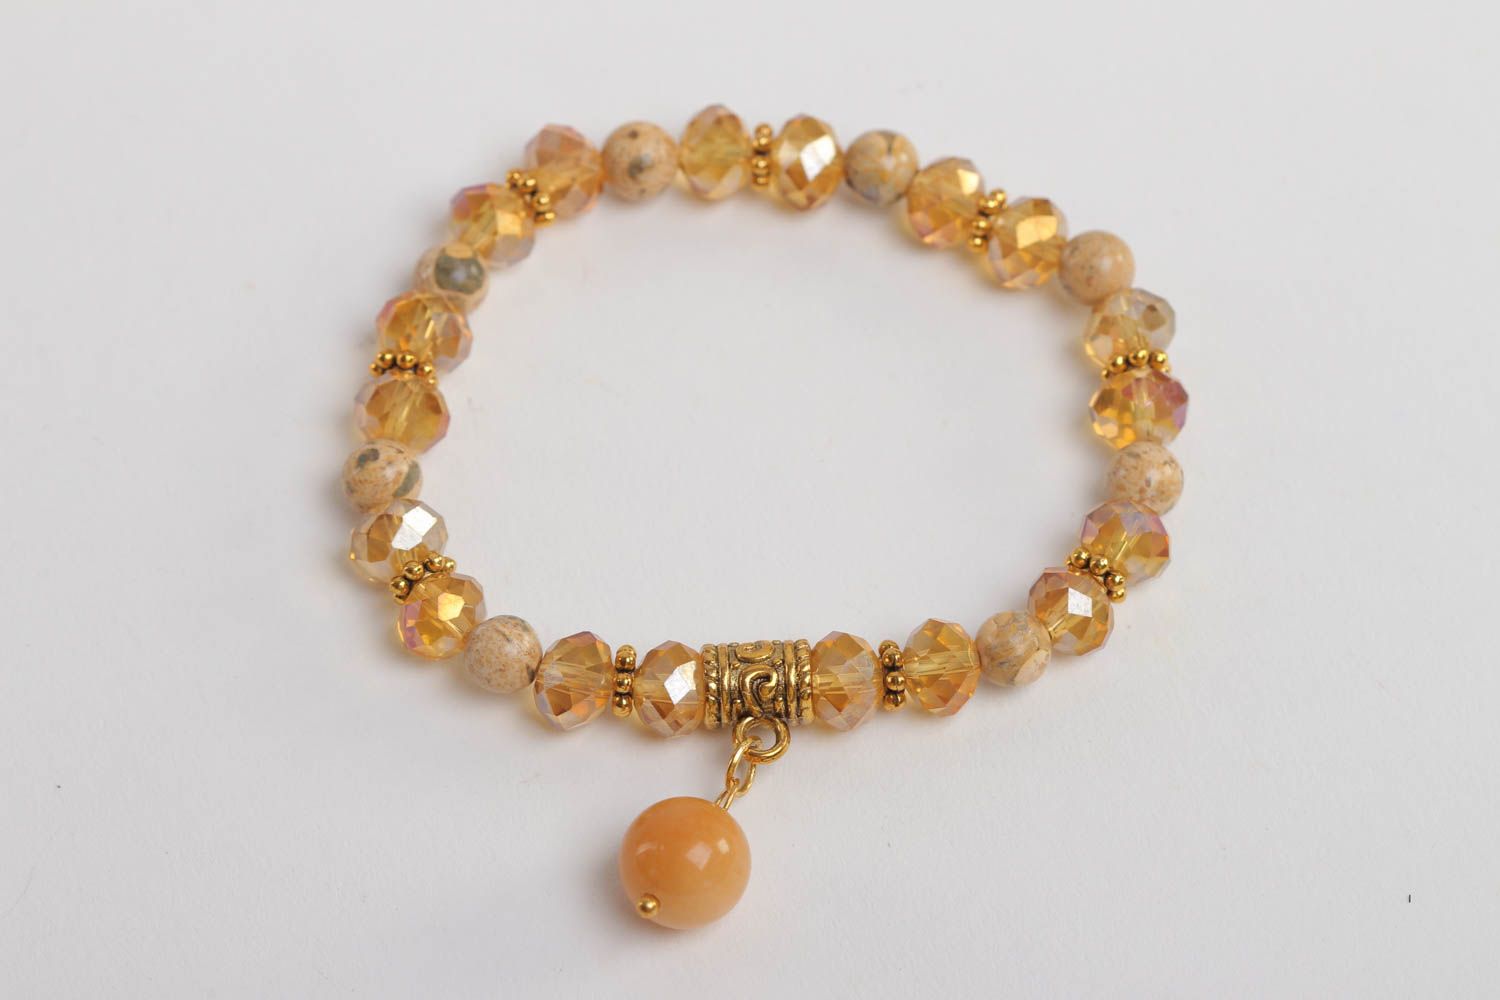 Stone beige beads' charm tennis bracelet for teen girl photo 2